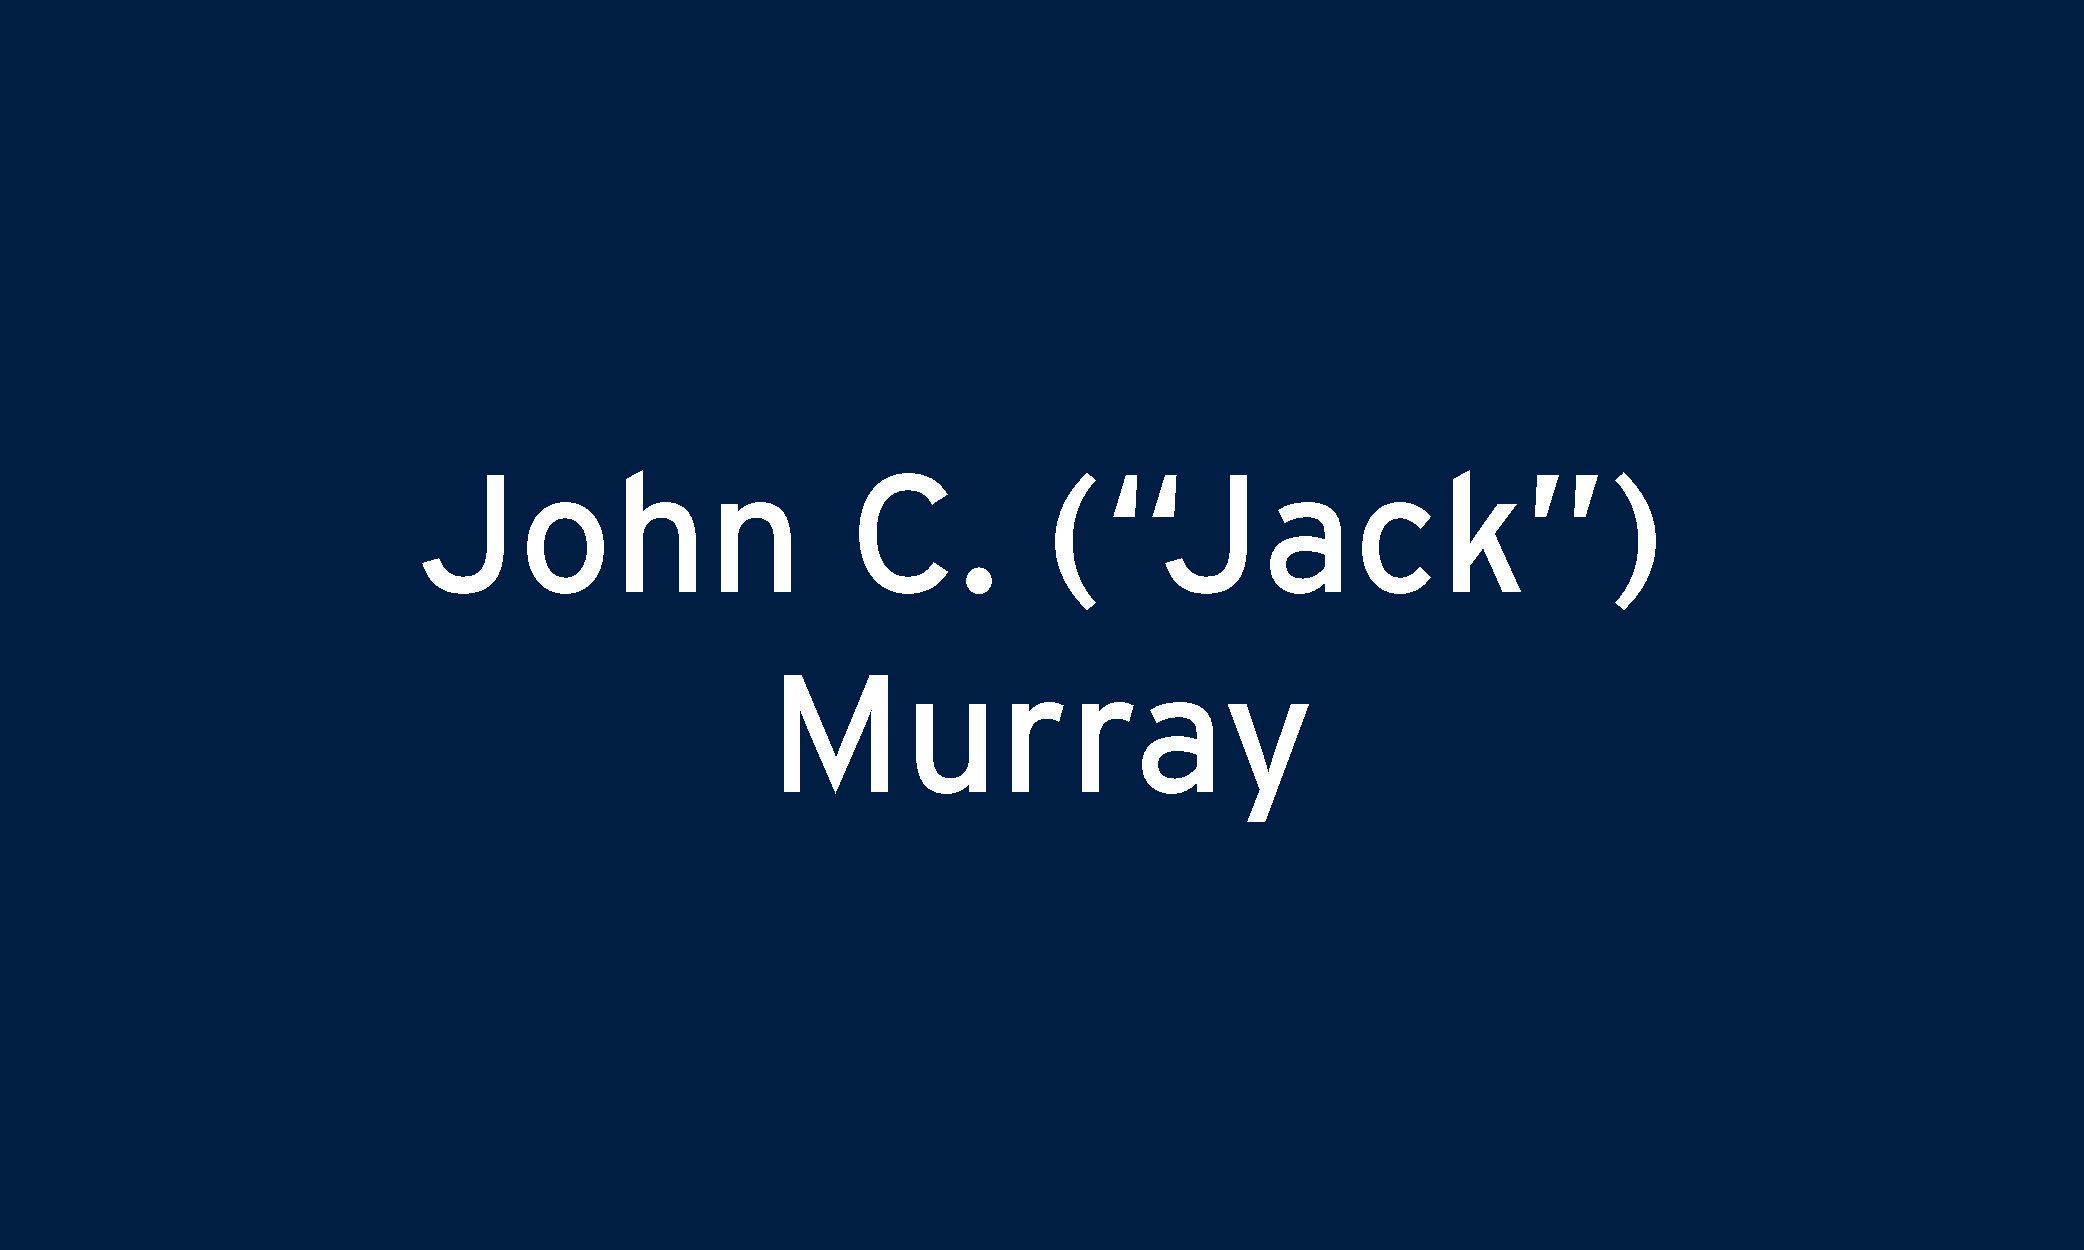 John C. (“Jack”) Murray